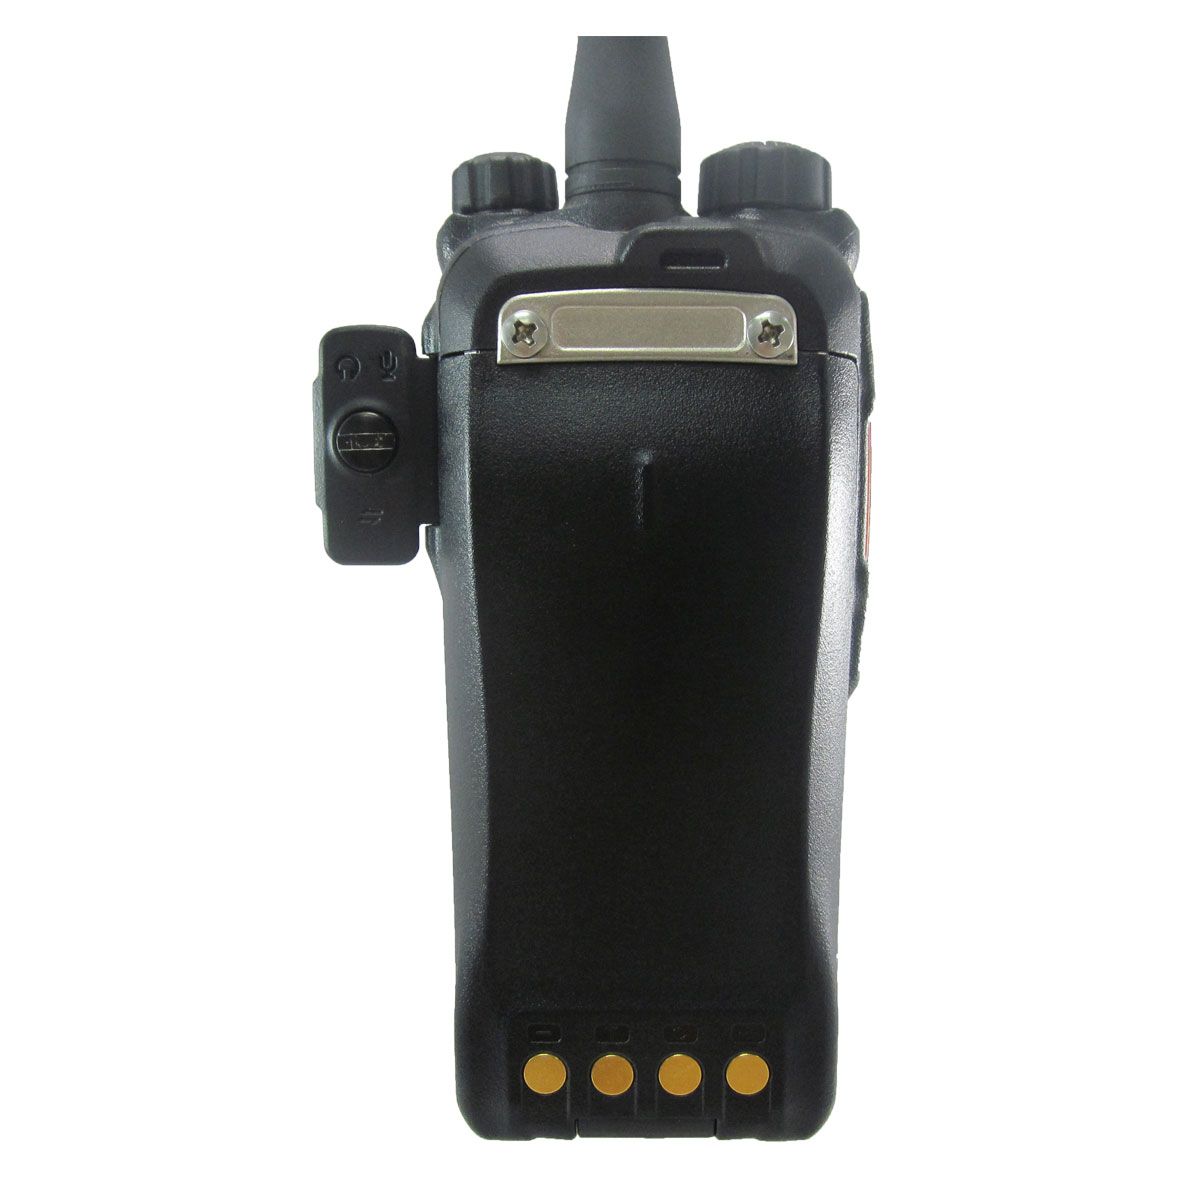 Radio Hytera PD706 Digital PD706-V VHF 136-174 MHz